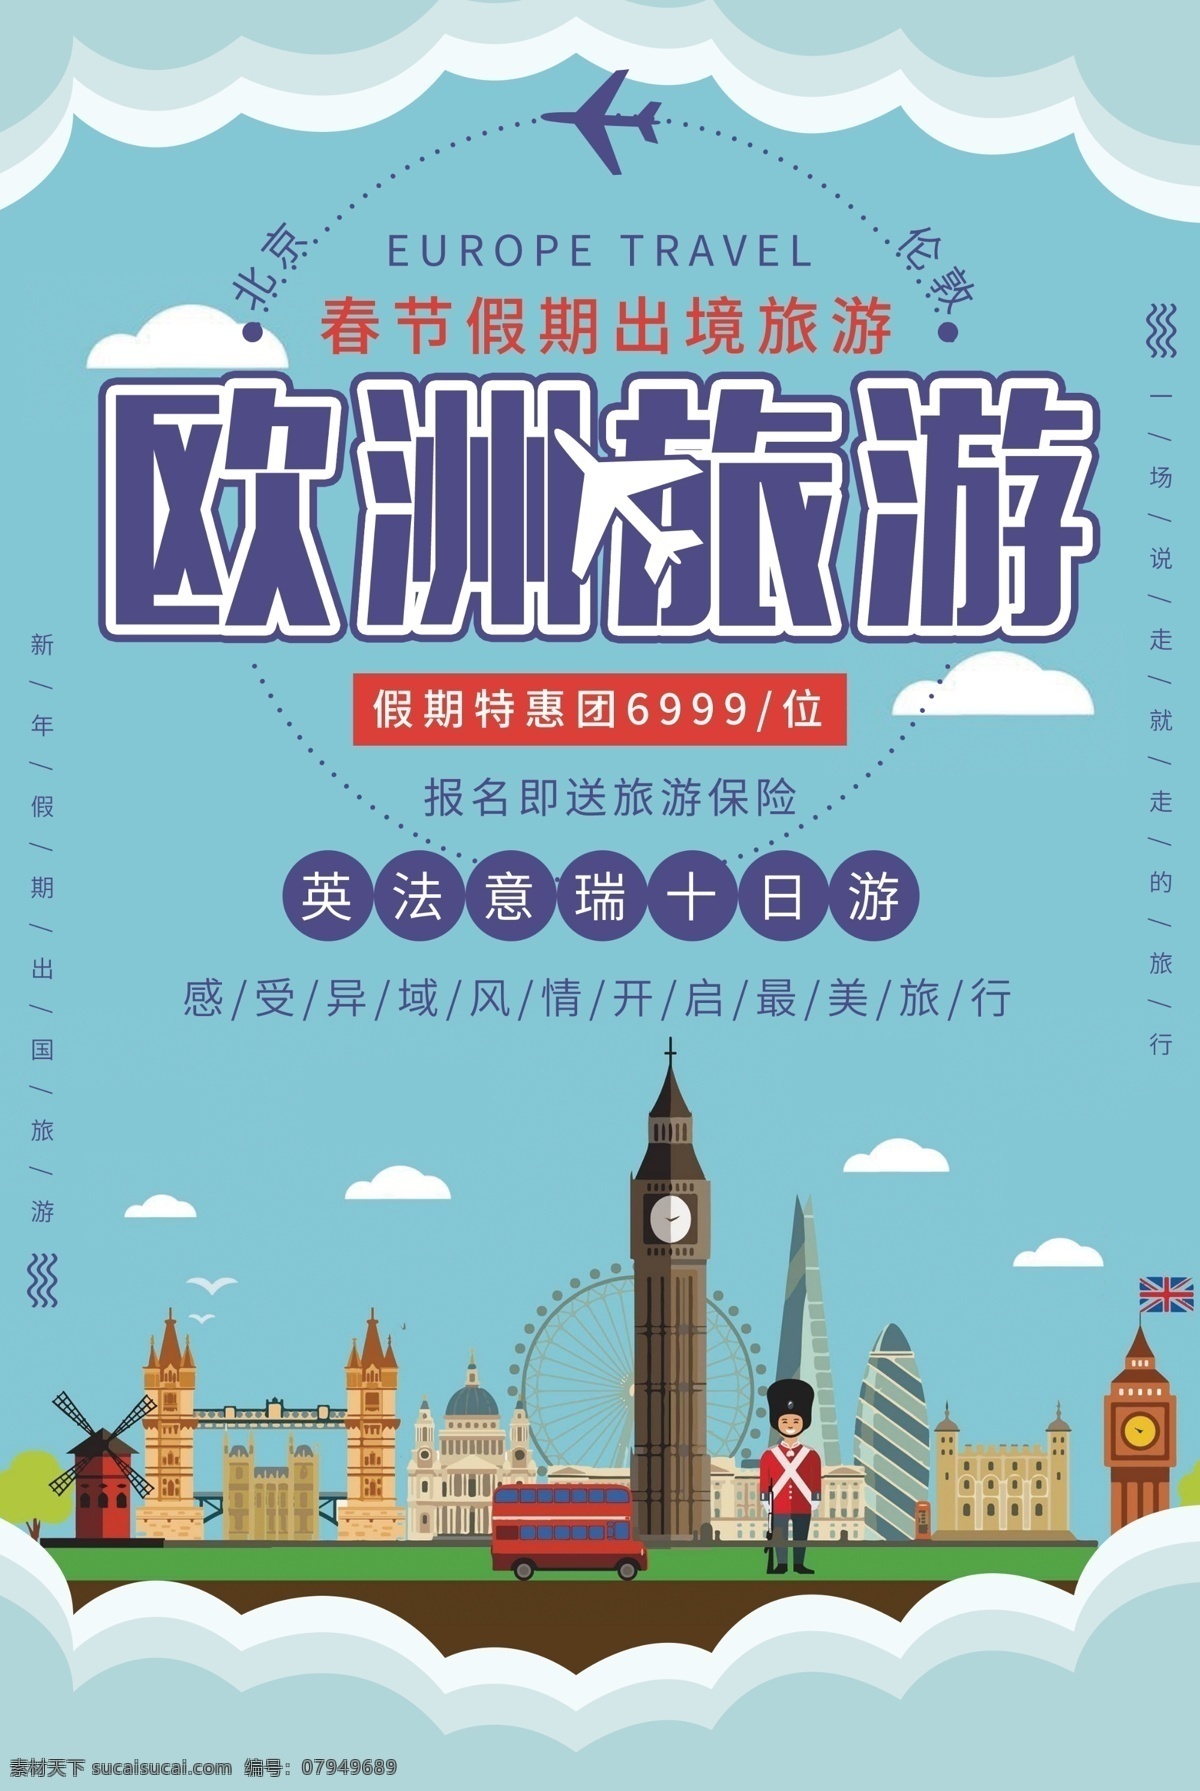 欧洲旅游 旅行 活动 宣传海报 宣传 海报 旅游